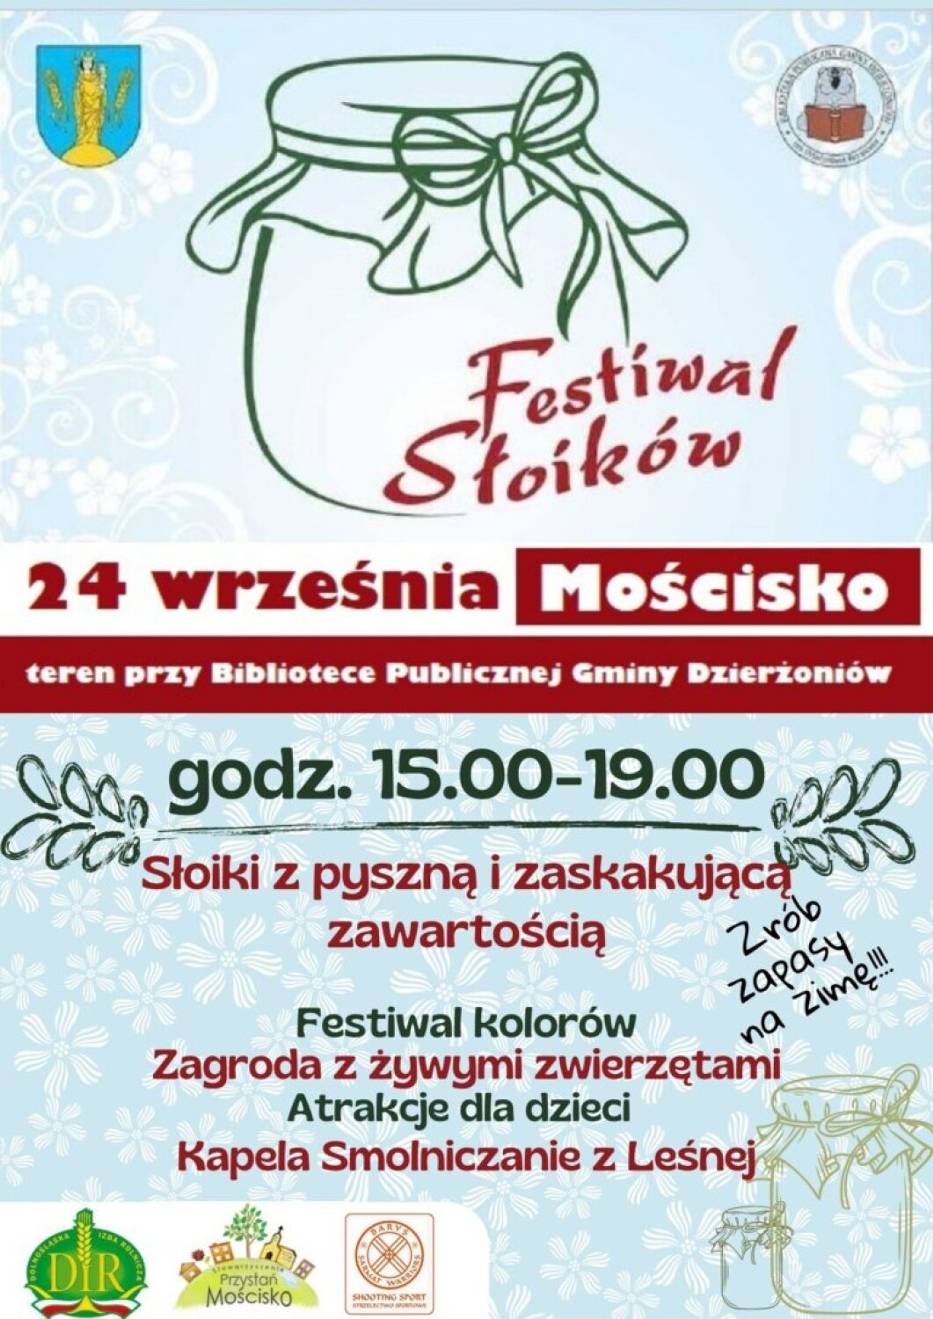 Festiwal Słoików w Mościsku już w sobotę 24 września